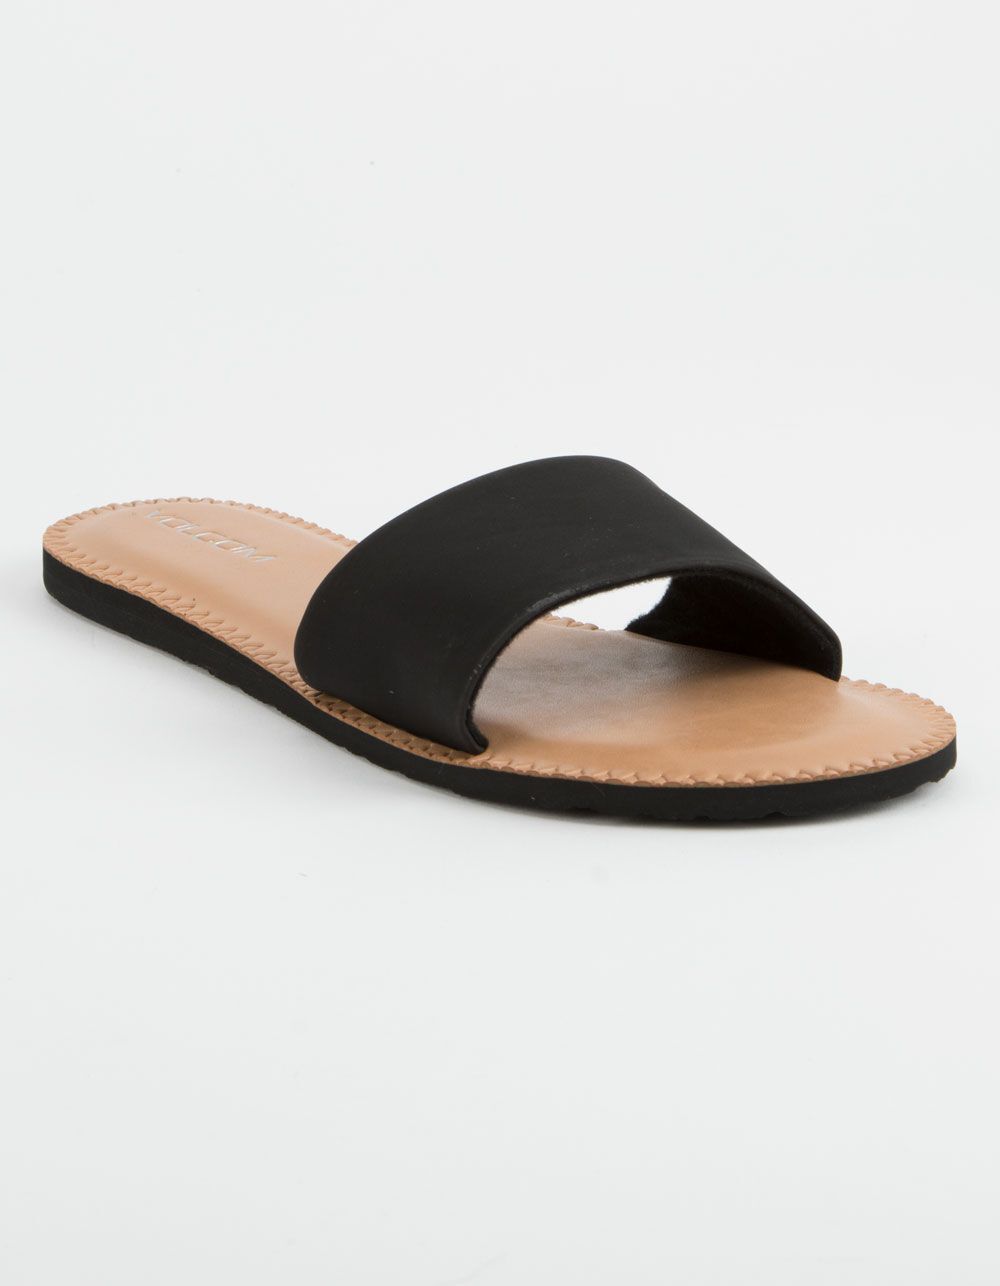 VOLCOM Simple Slide Black Sandals | Tillys